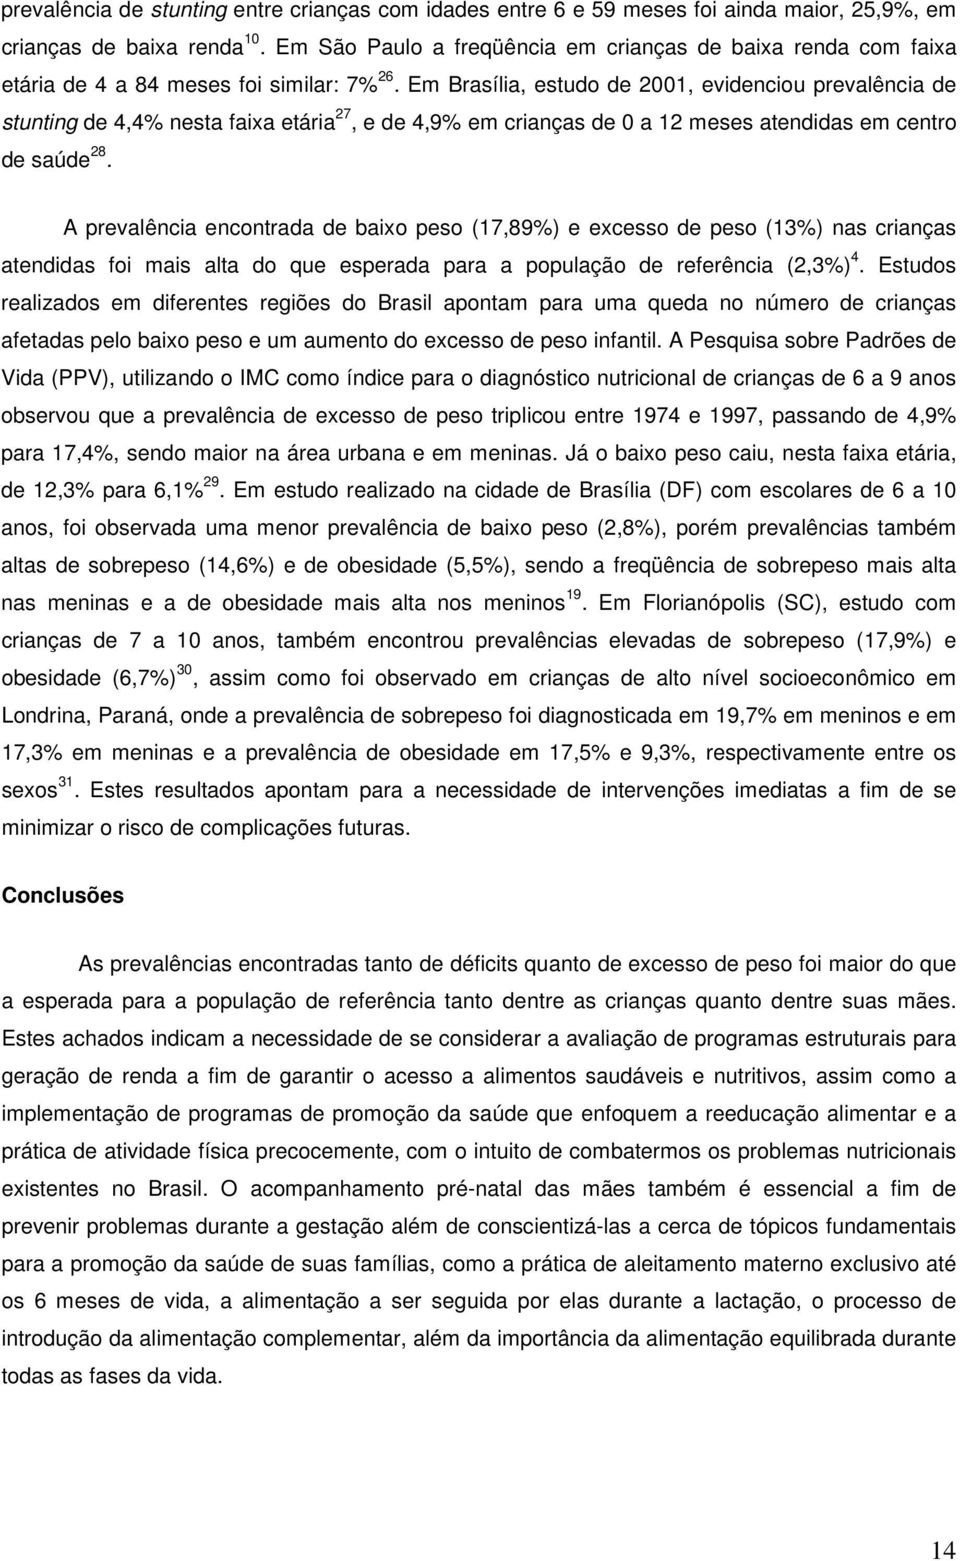 Em Brasília, estudo de 2001, evidenciou prevalência de stunting de 4,4% nesta faixa etária 27, e de 4,9% em crianças de 0 a 12 meses atendidas em centro de saúde 28.